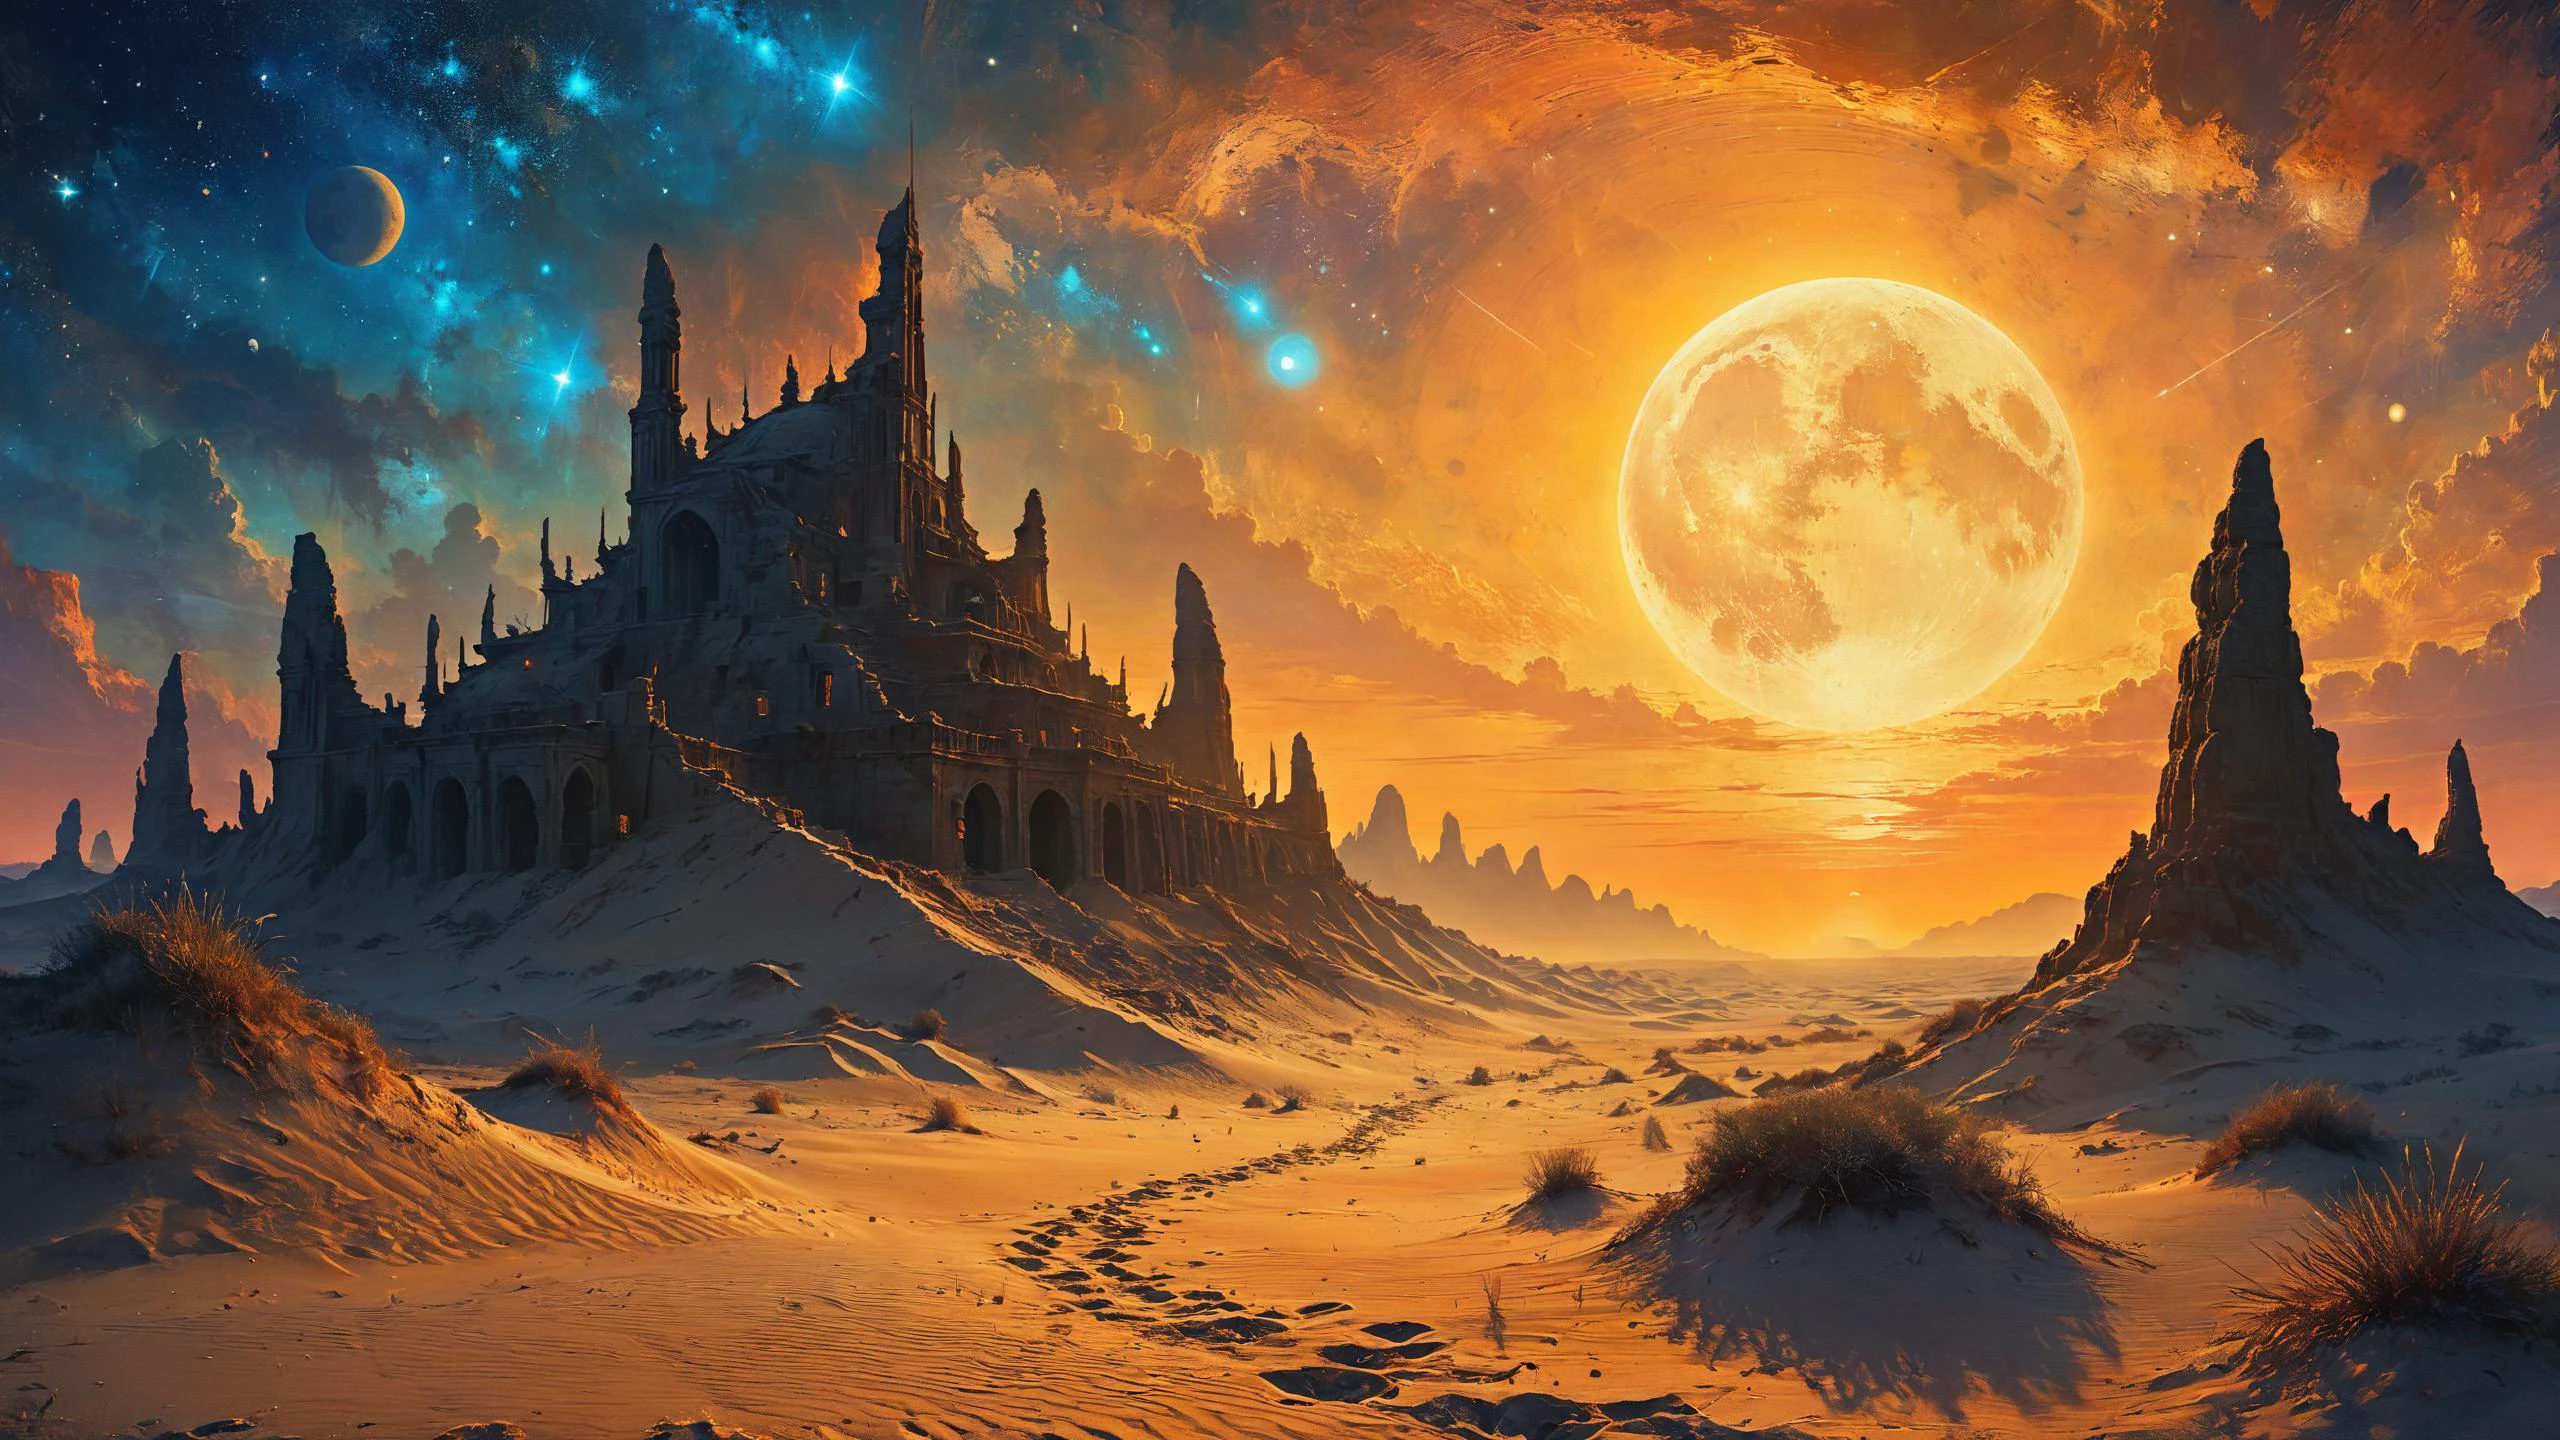 外星文明的废墟, 背景中生物發光衛星下沙丘的移動, 刺眼的陽光, Dreamyvibes 艺术风格